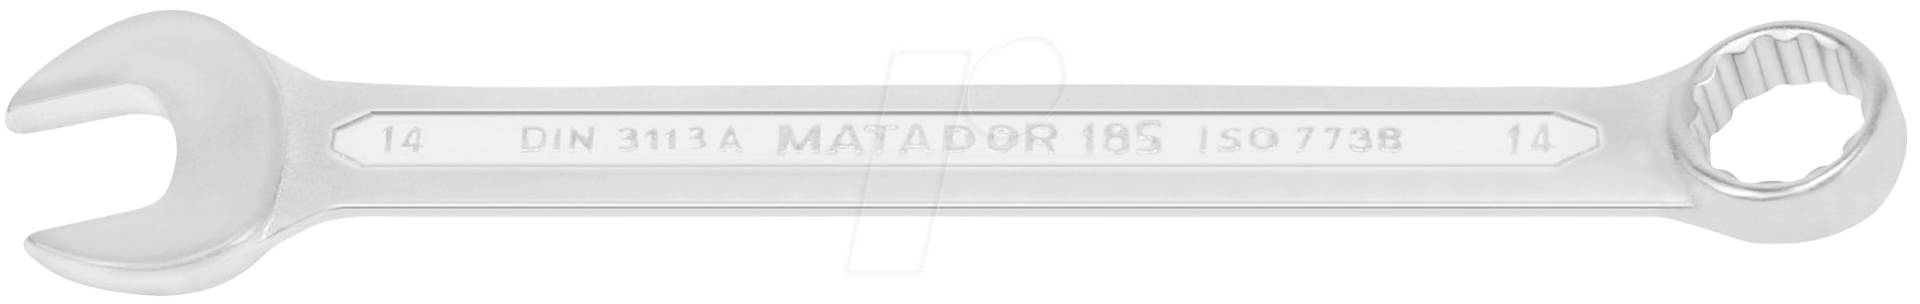 MAT 0185 9160 - Ringmaulschlüsselsatz, SW 6-32, 16-teilig, DIN 3113 A von Matador